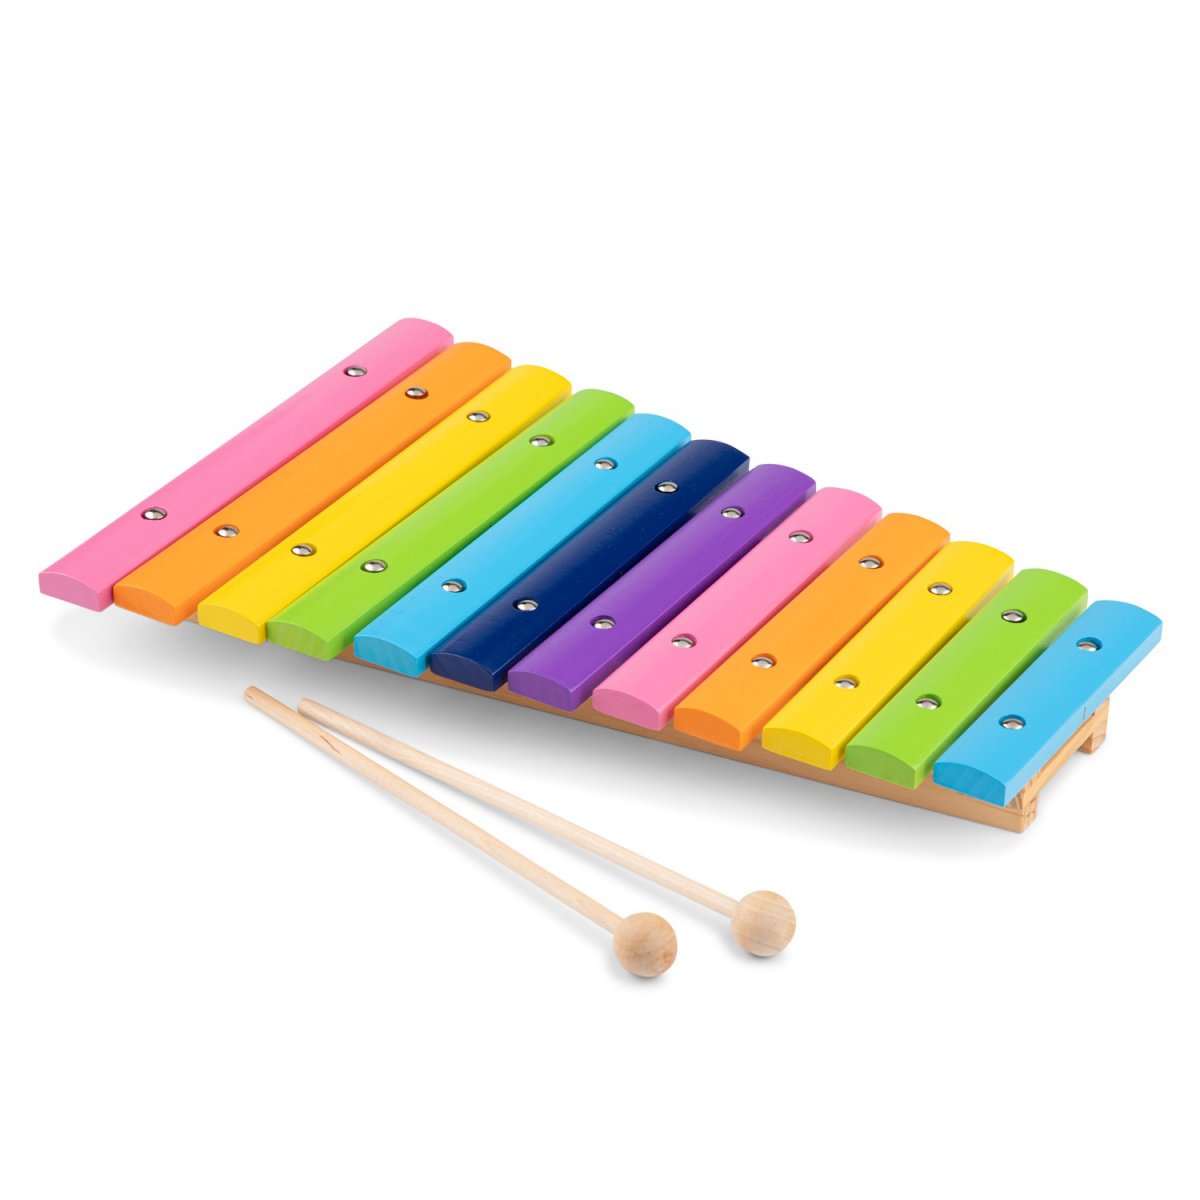 Дитячий ксилофон New Classic Toys дерев'яний (10236) - фото 2